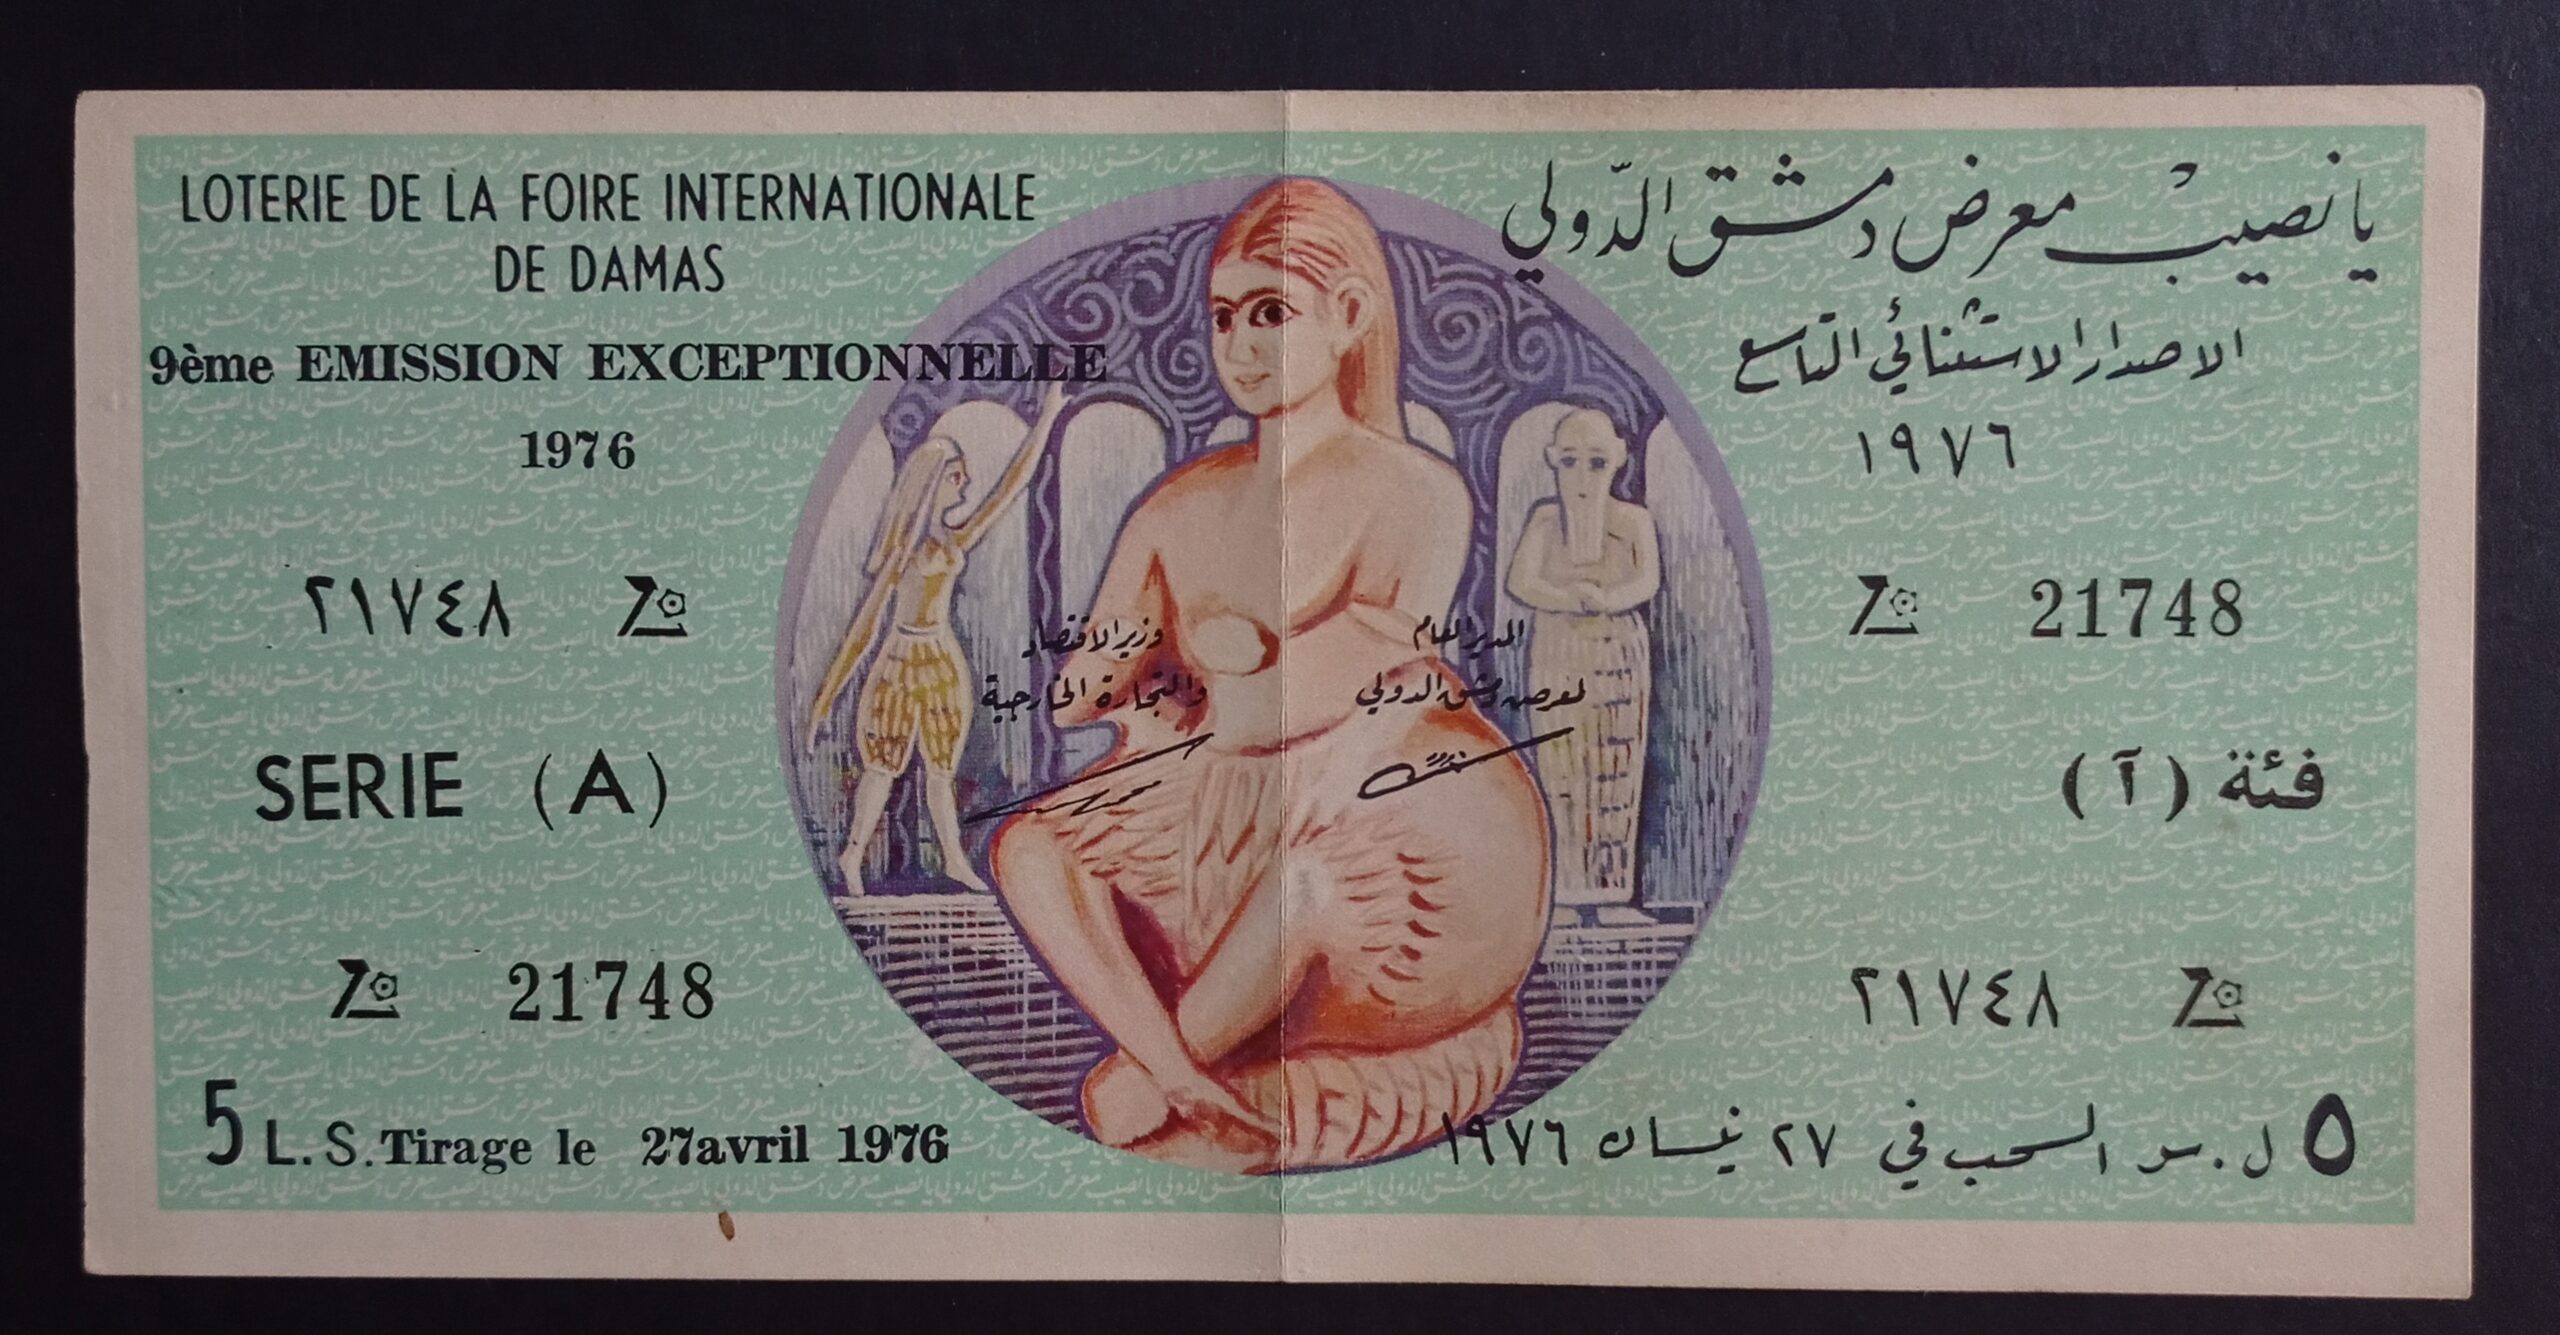 التاريخ السوري المعاصر - يانصيب معرض دمشق الدولي - الإصدار الاستثنائي التاسع - (آ) عام 1976